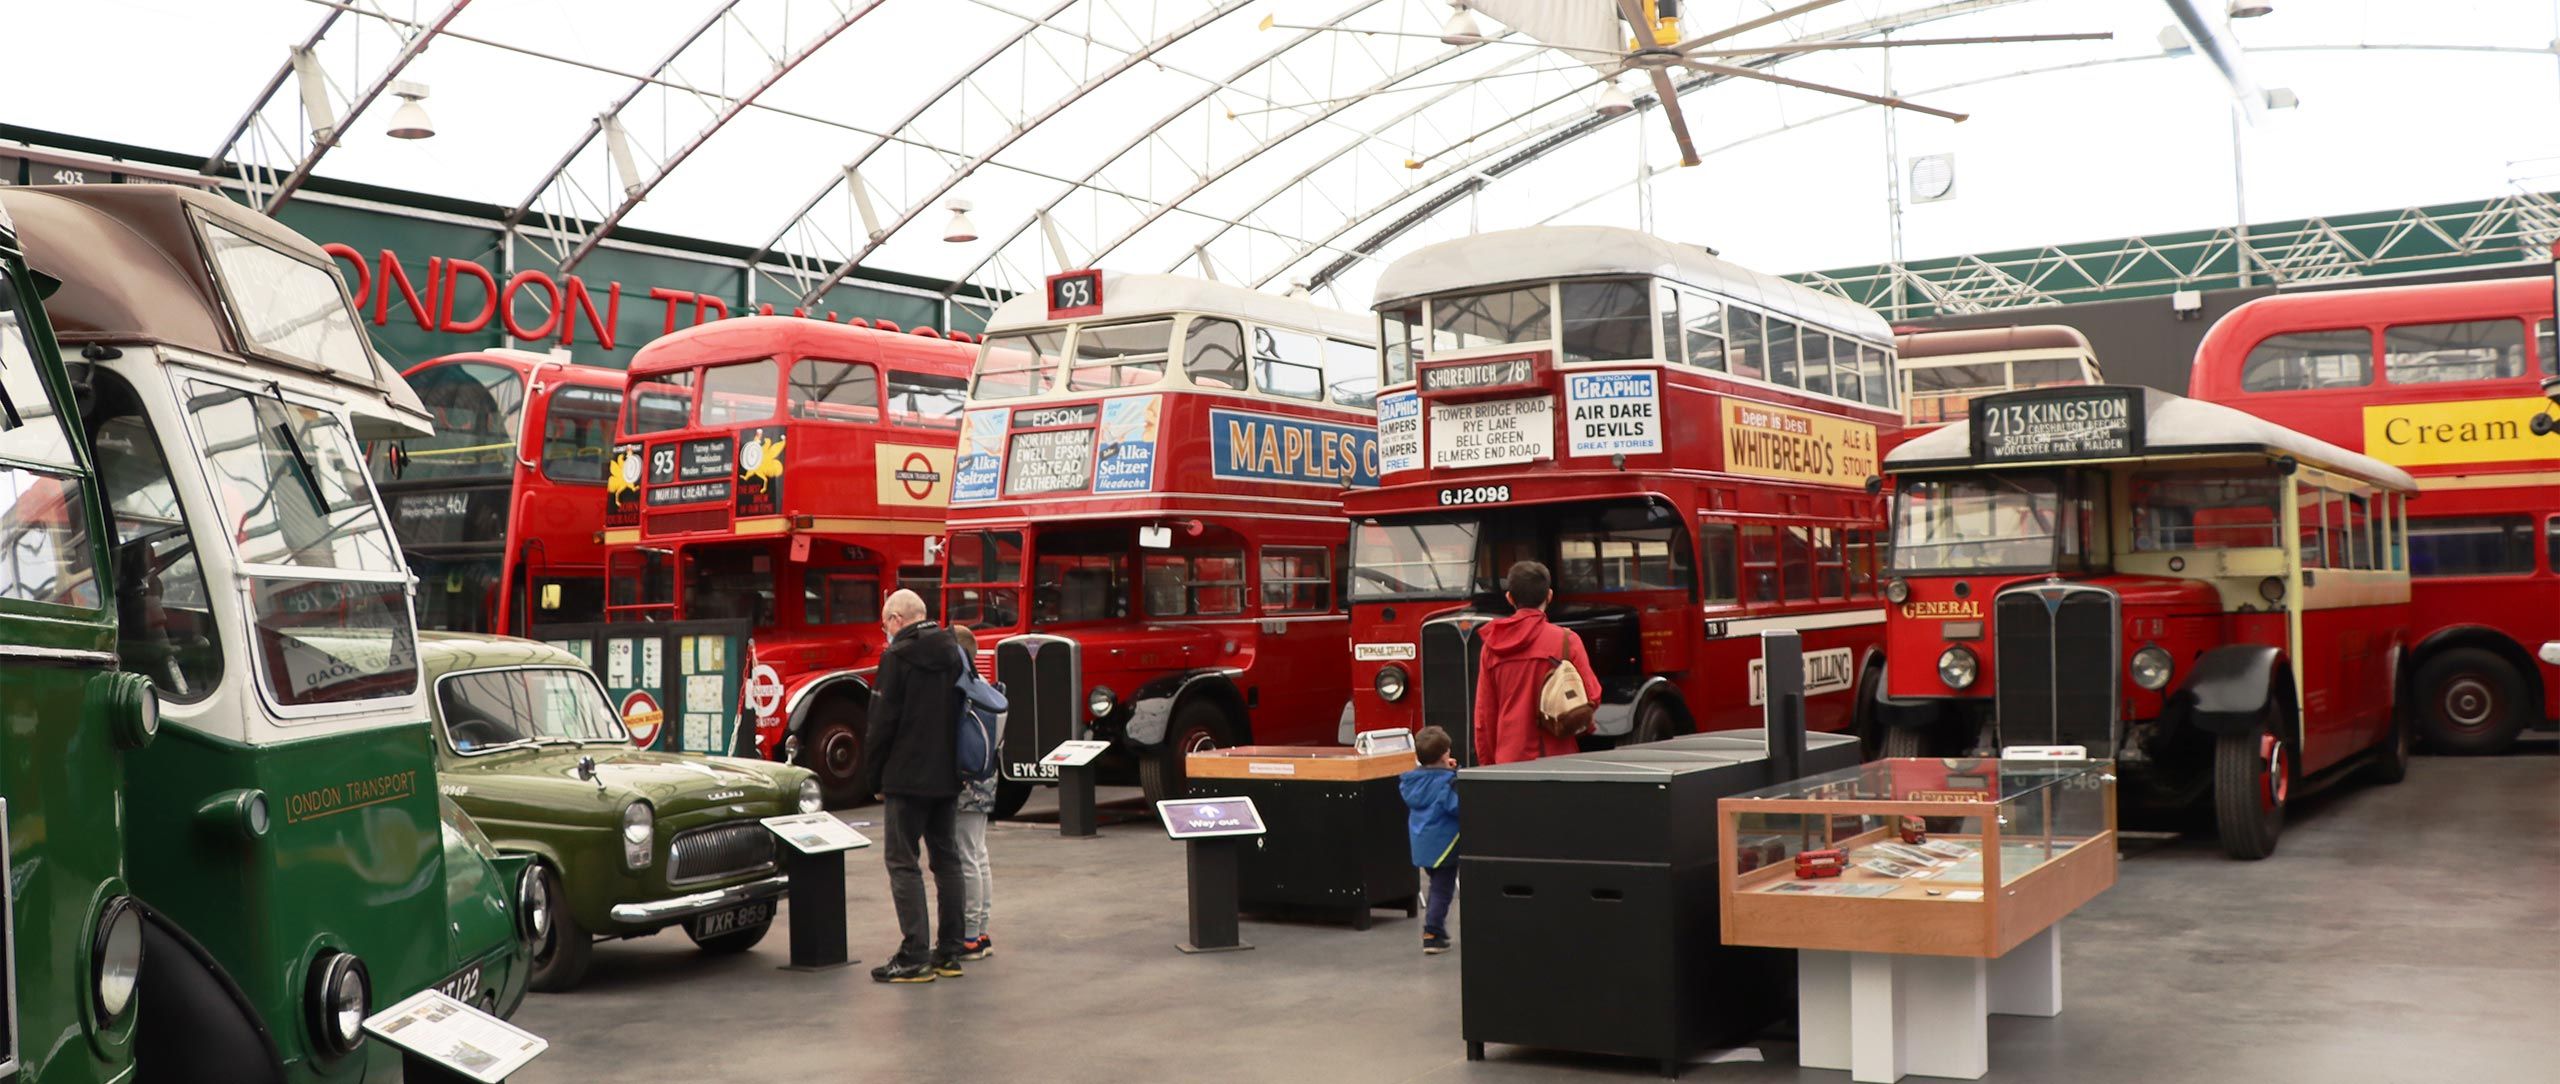 London-Bus-Museum-header-1.jpg